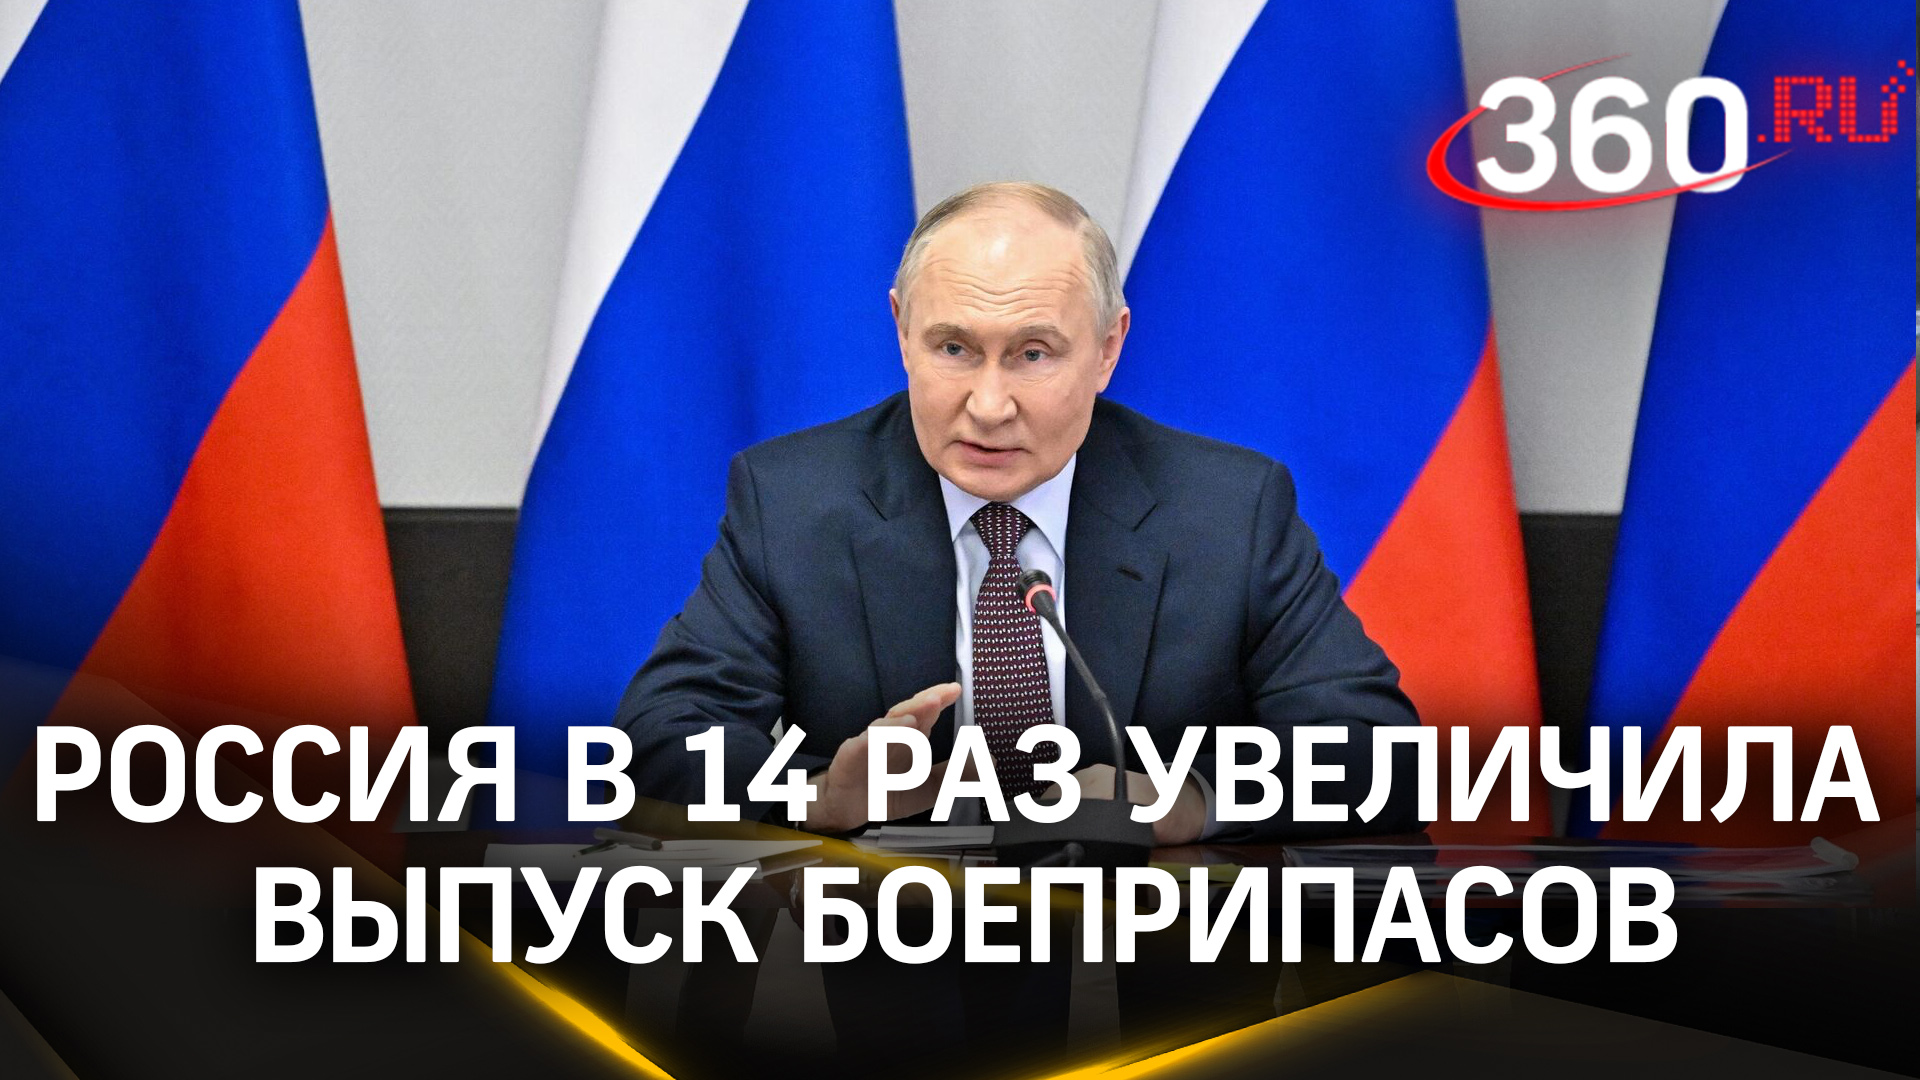 Путин на встрече с ОПК: Россия в 14 раз увеличила выпуск боеприпасов